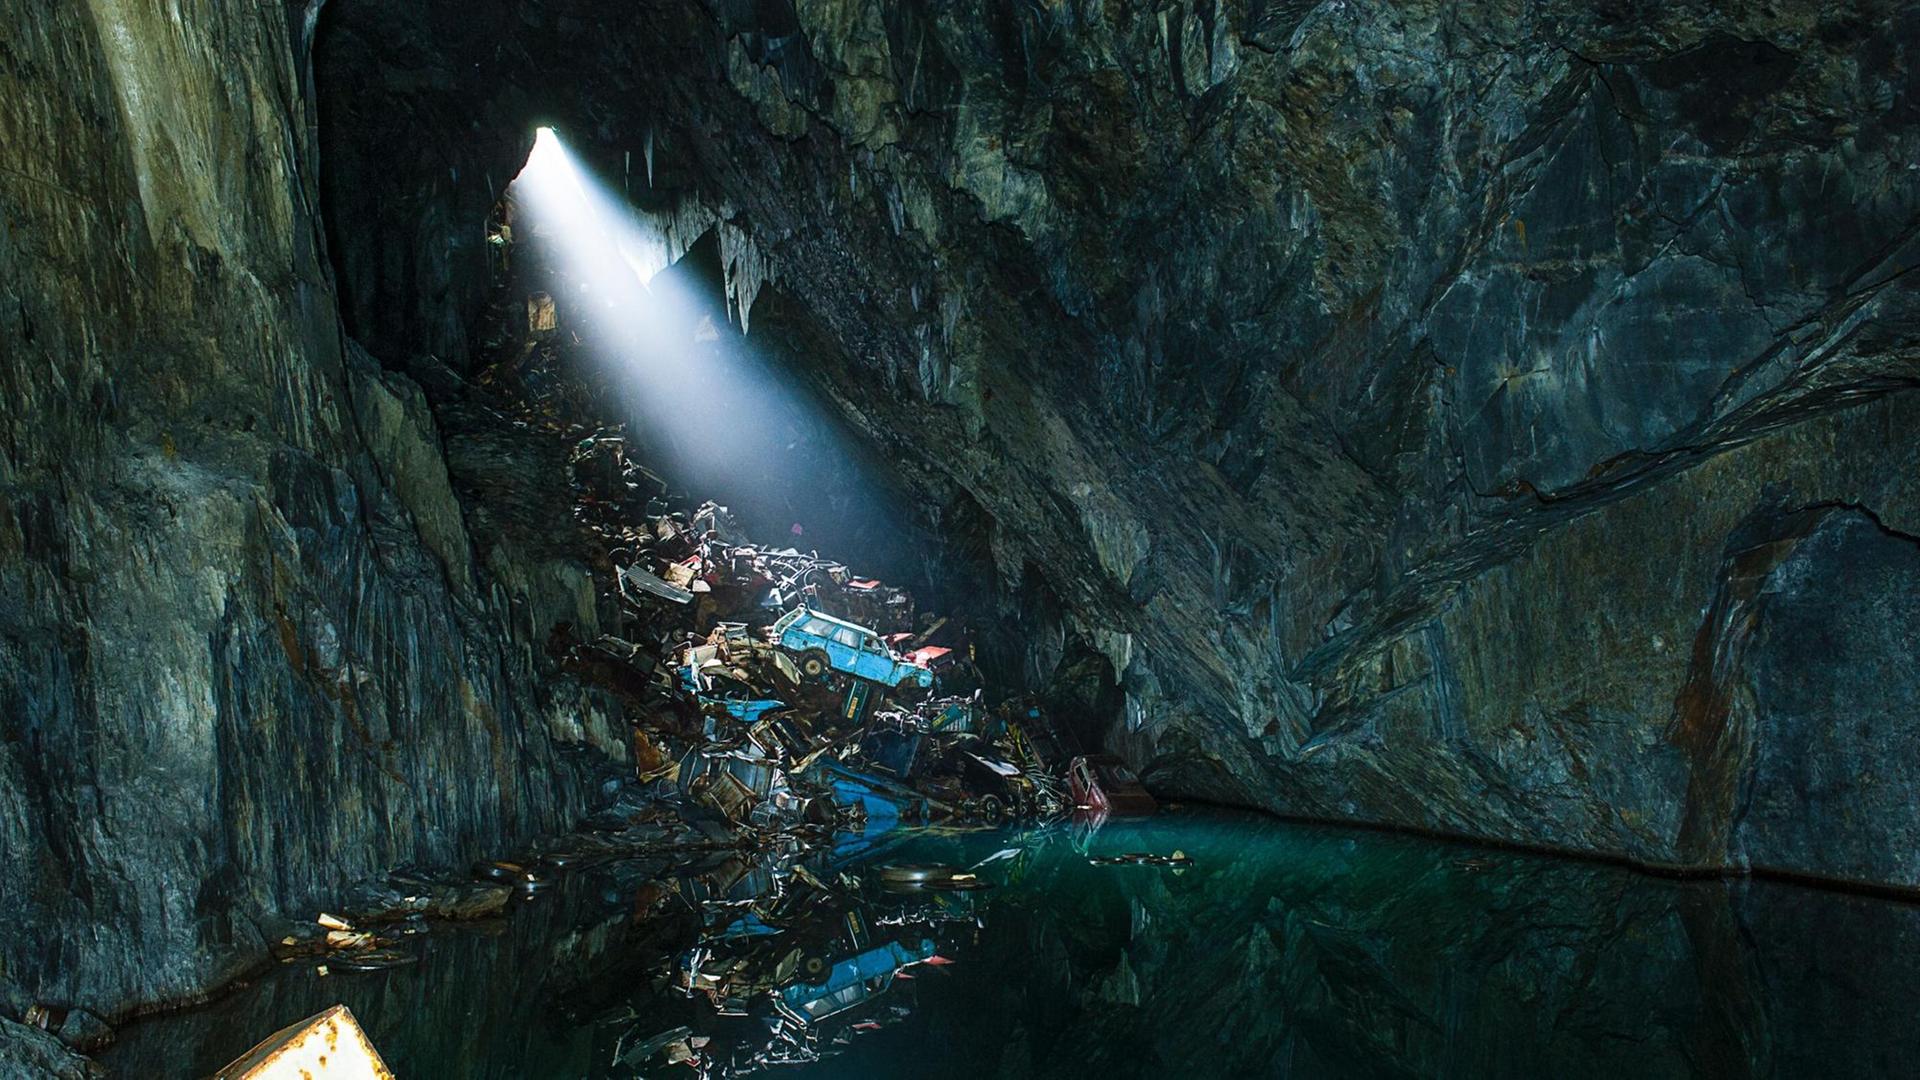 Höhle mit Wasser und einem Spalt im Stein, durch den Sonnenlicht auf einen Müllhaufen fällt